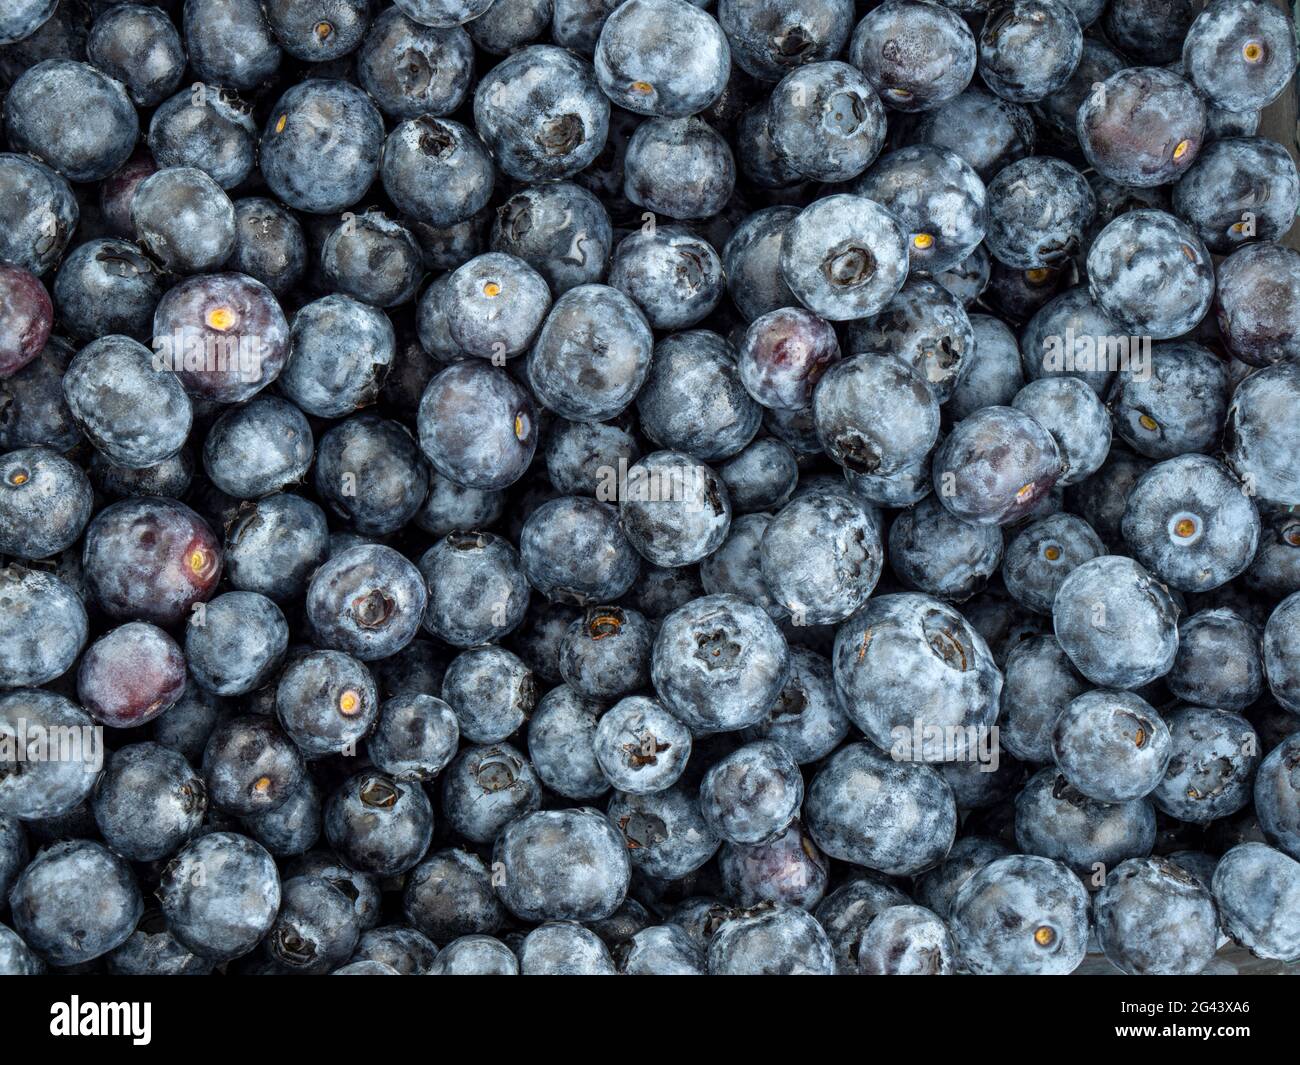 Full frame of blueberries Stock Photo